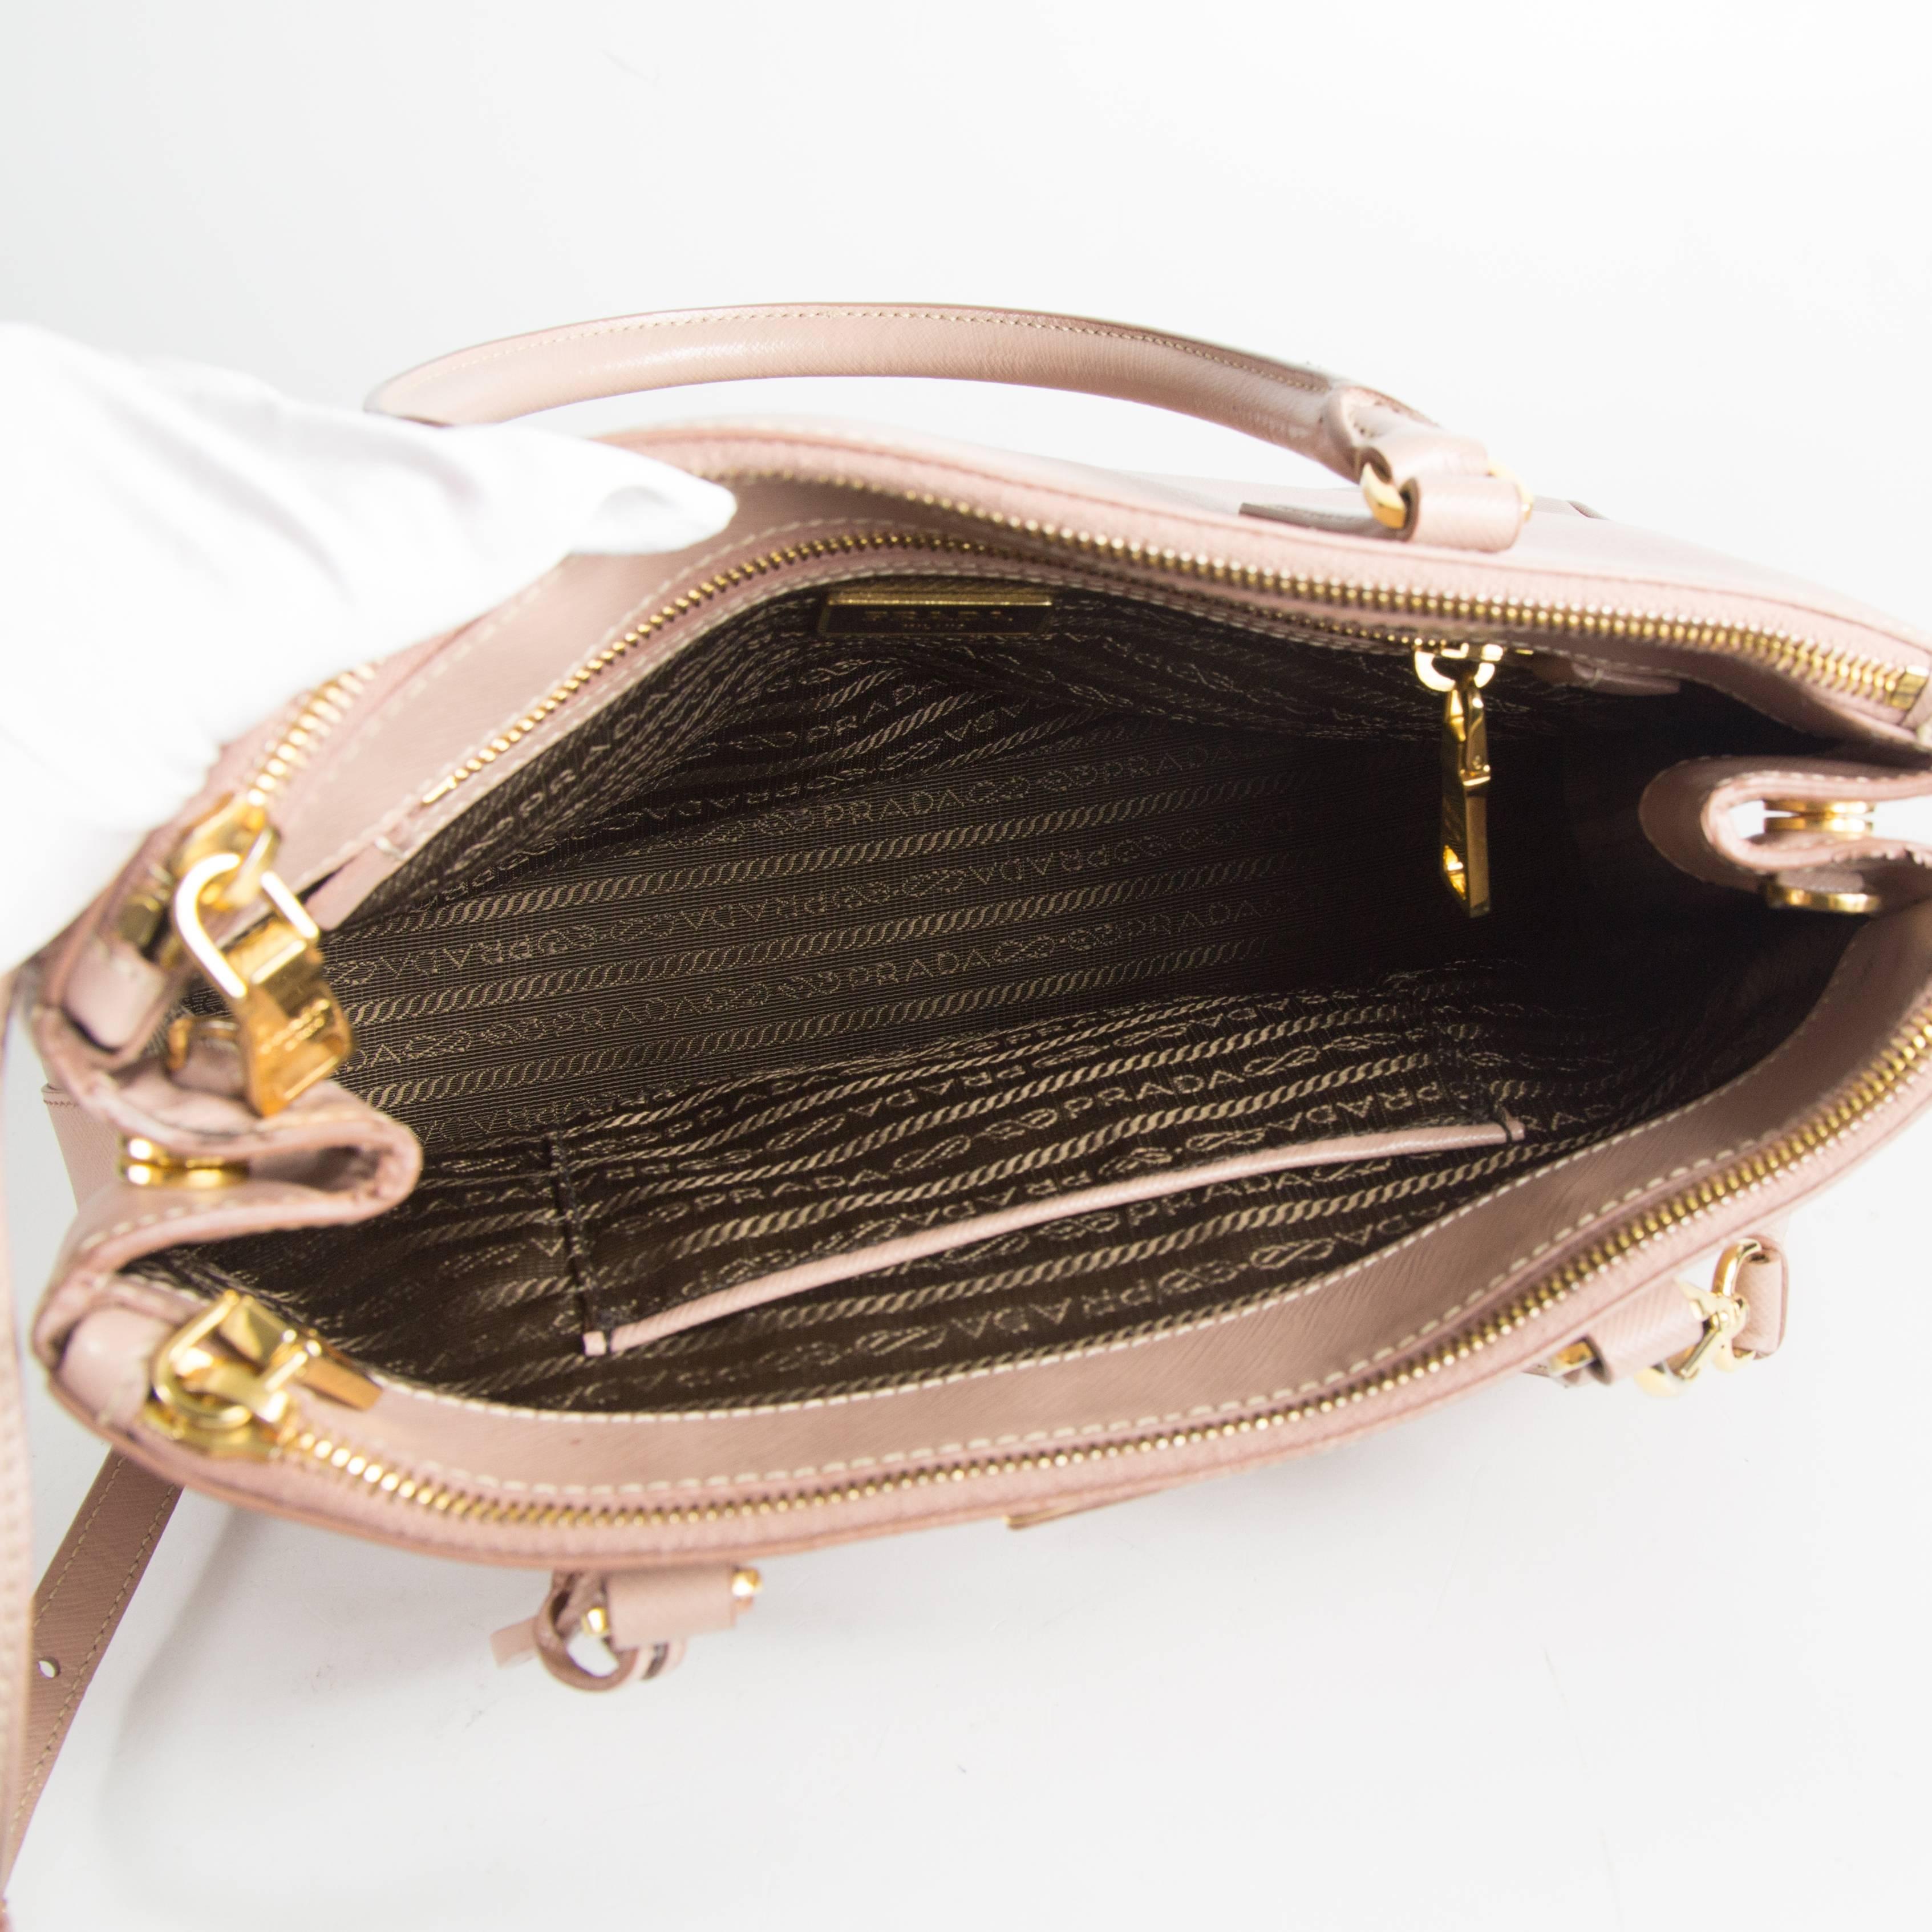 Prada Pink Saffiano Shoulder Bag - Leather Satchel Gold Handbag Tote 2